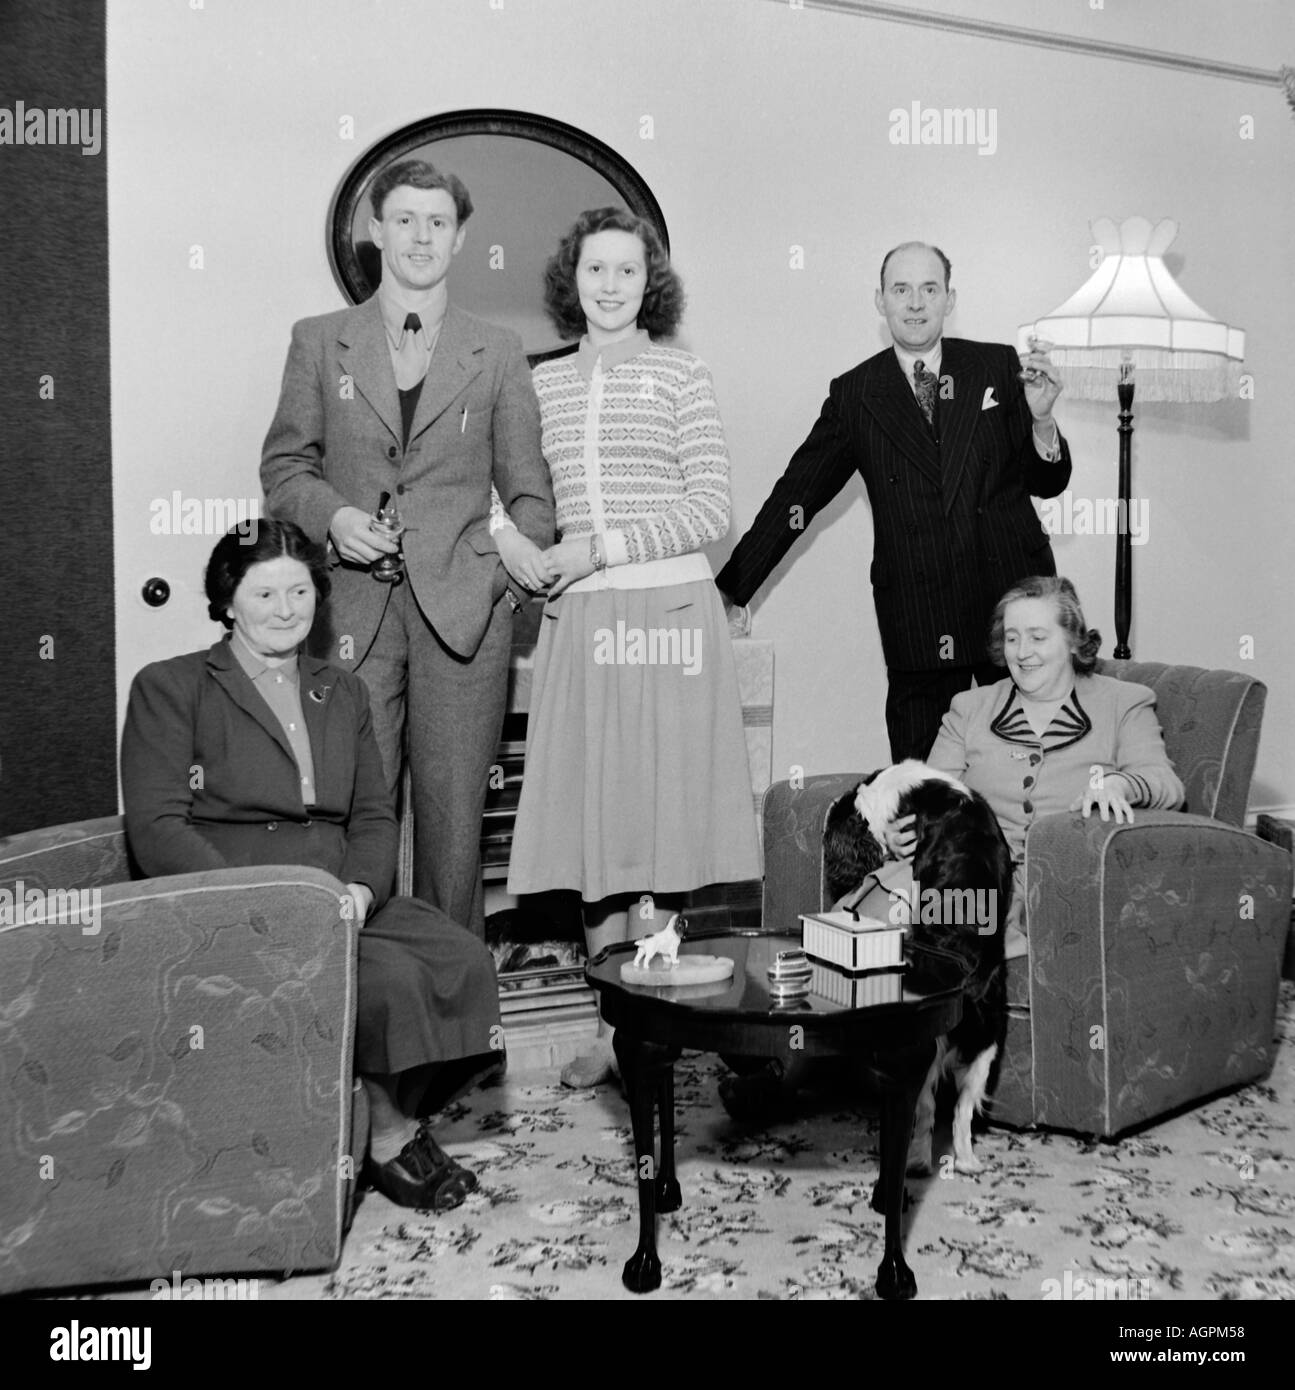 Vecchio VINTAGE IN BIANCO E NERO DI FAMIGLIA fotografia istantanea di gruppo nel salotto del 1950 circa Foto Stock